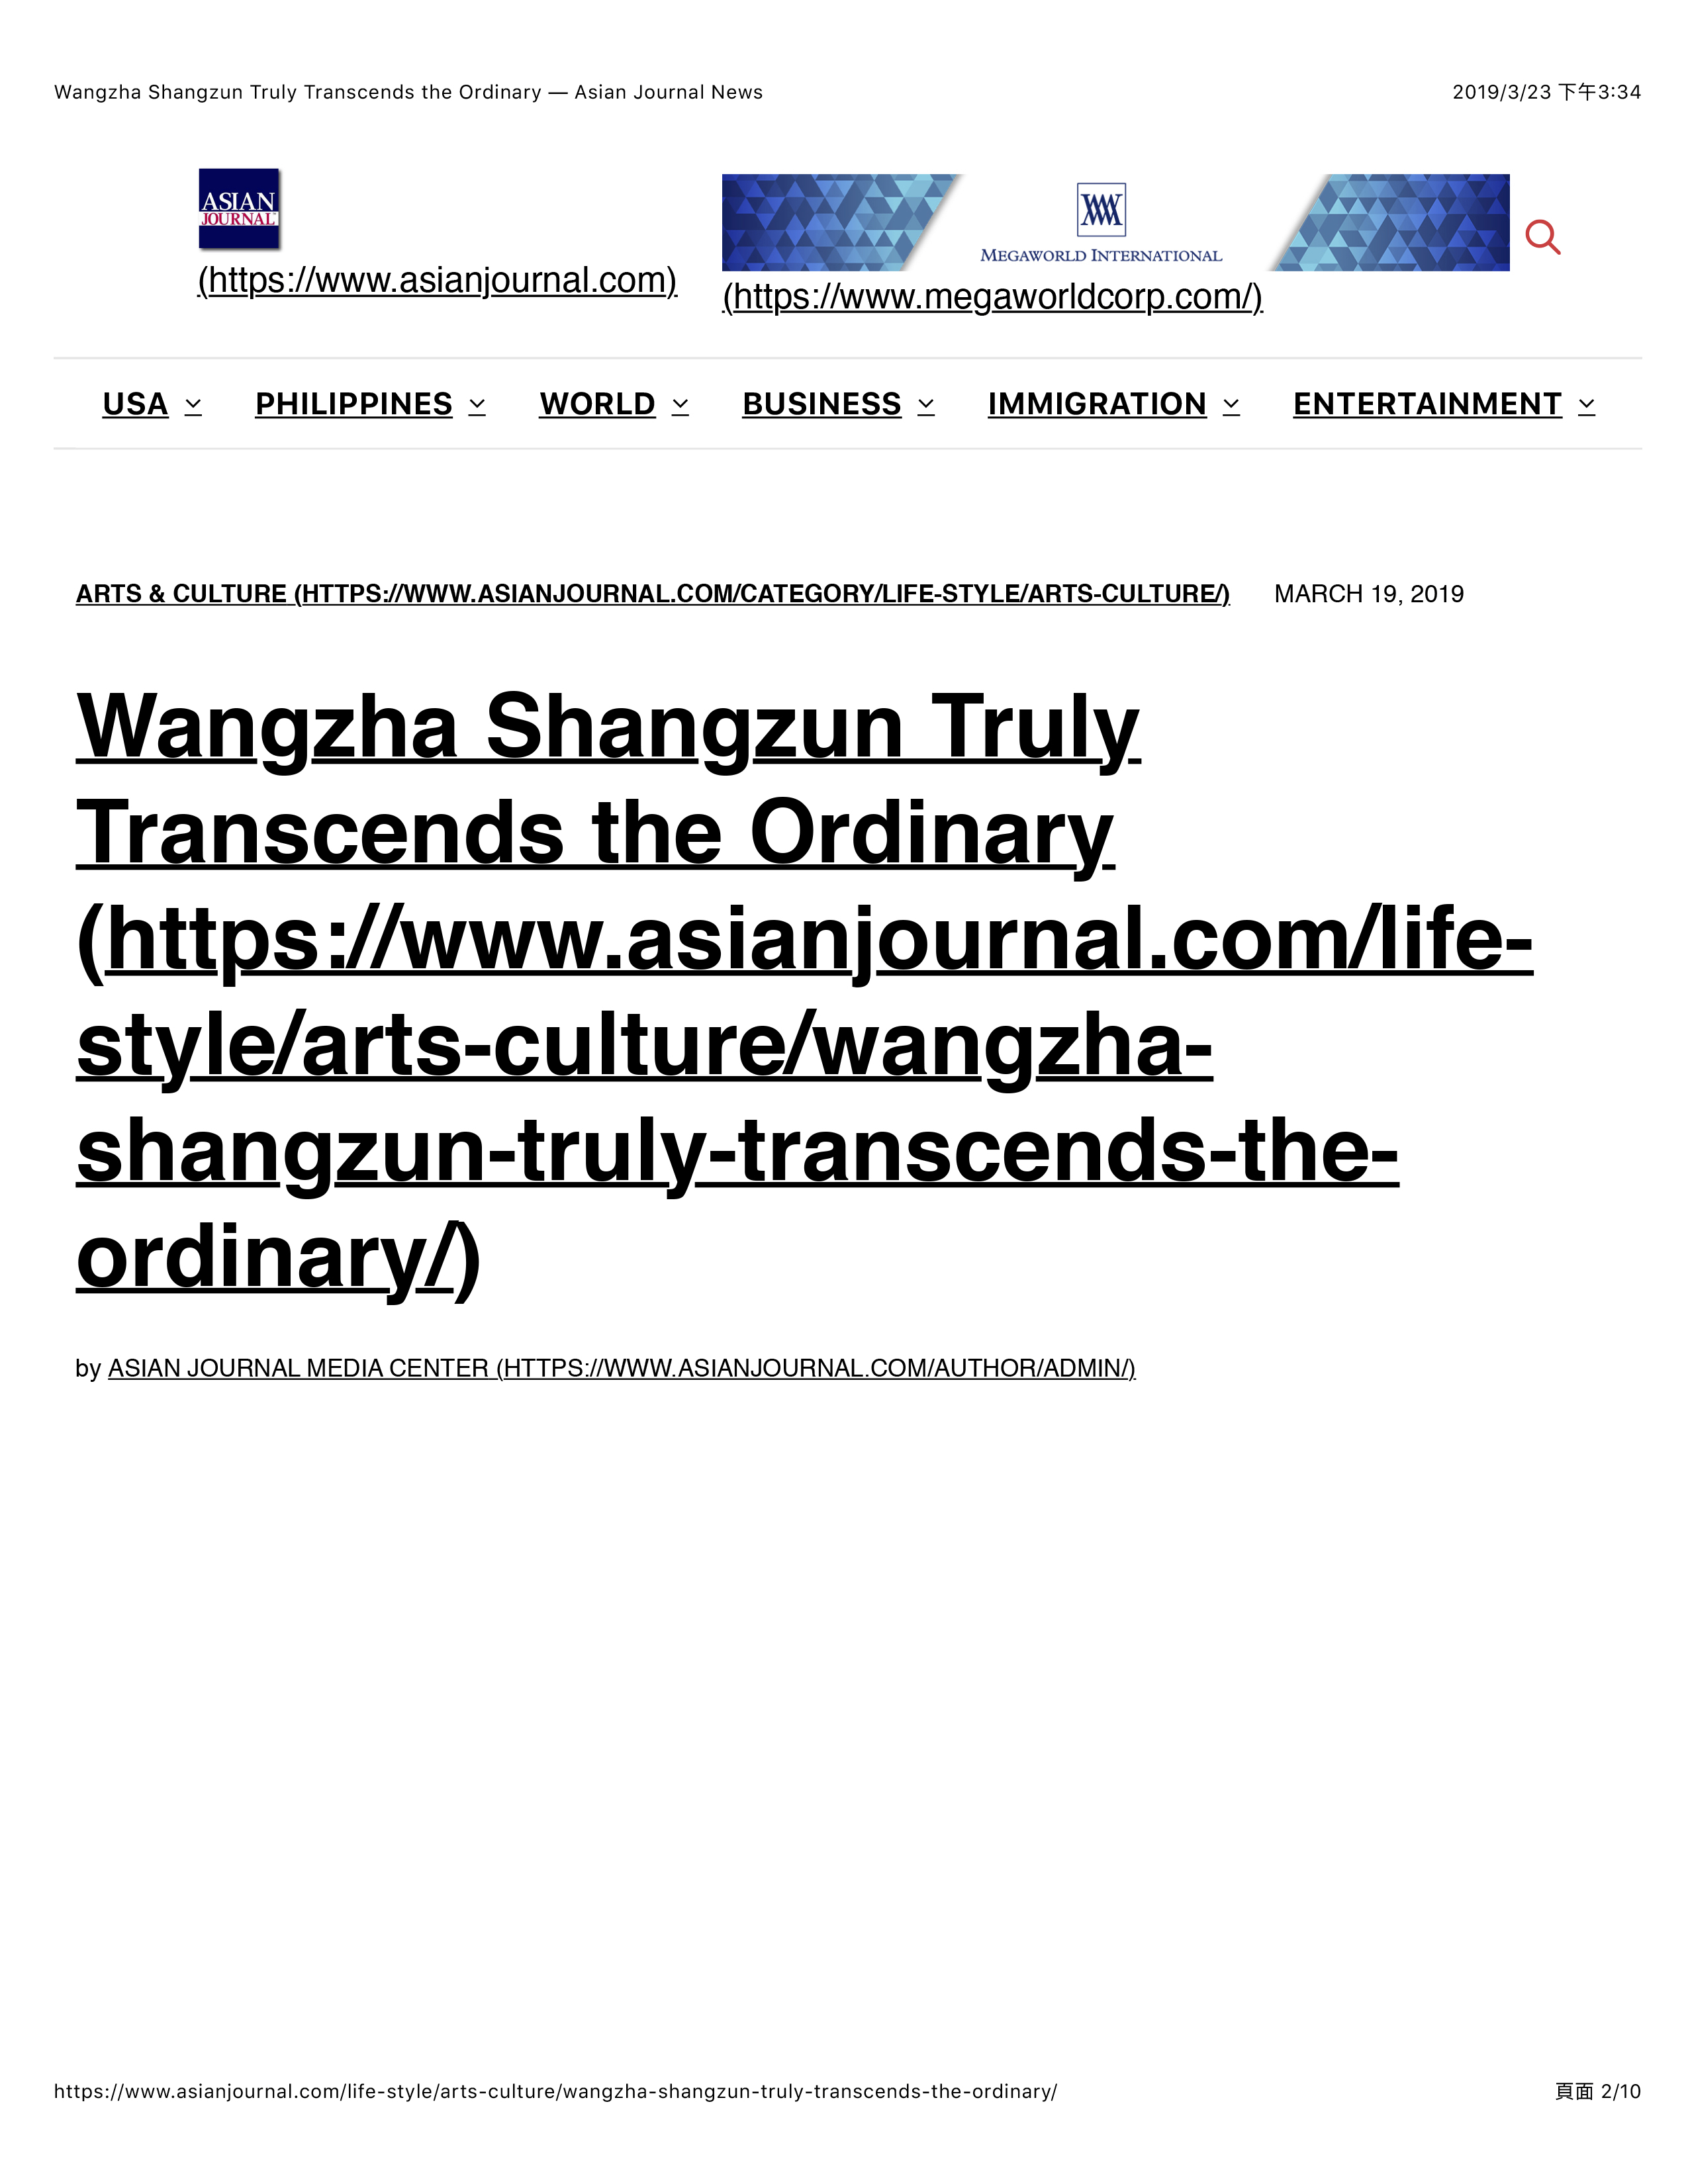 Asian Journal Wangzha Shangzun Truly Transcends the Ordinary-1